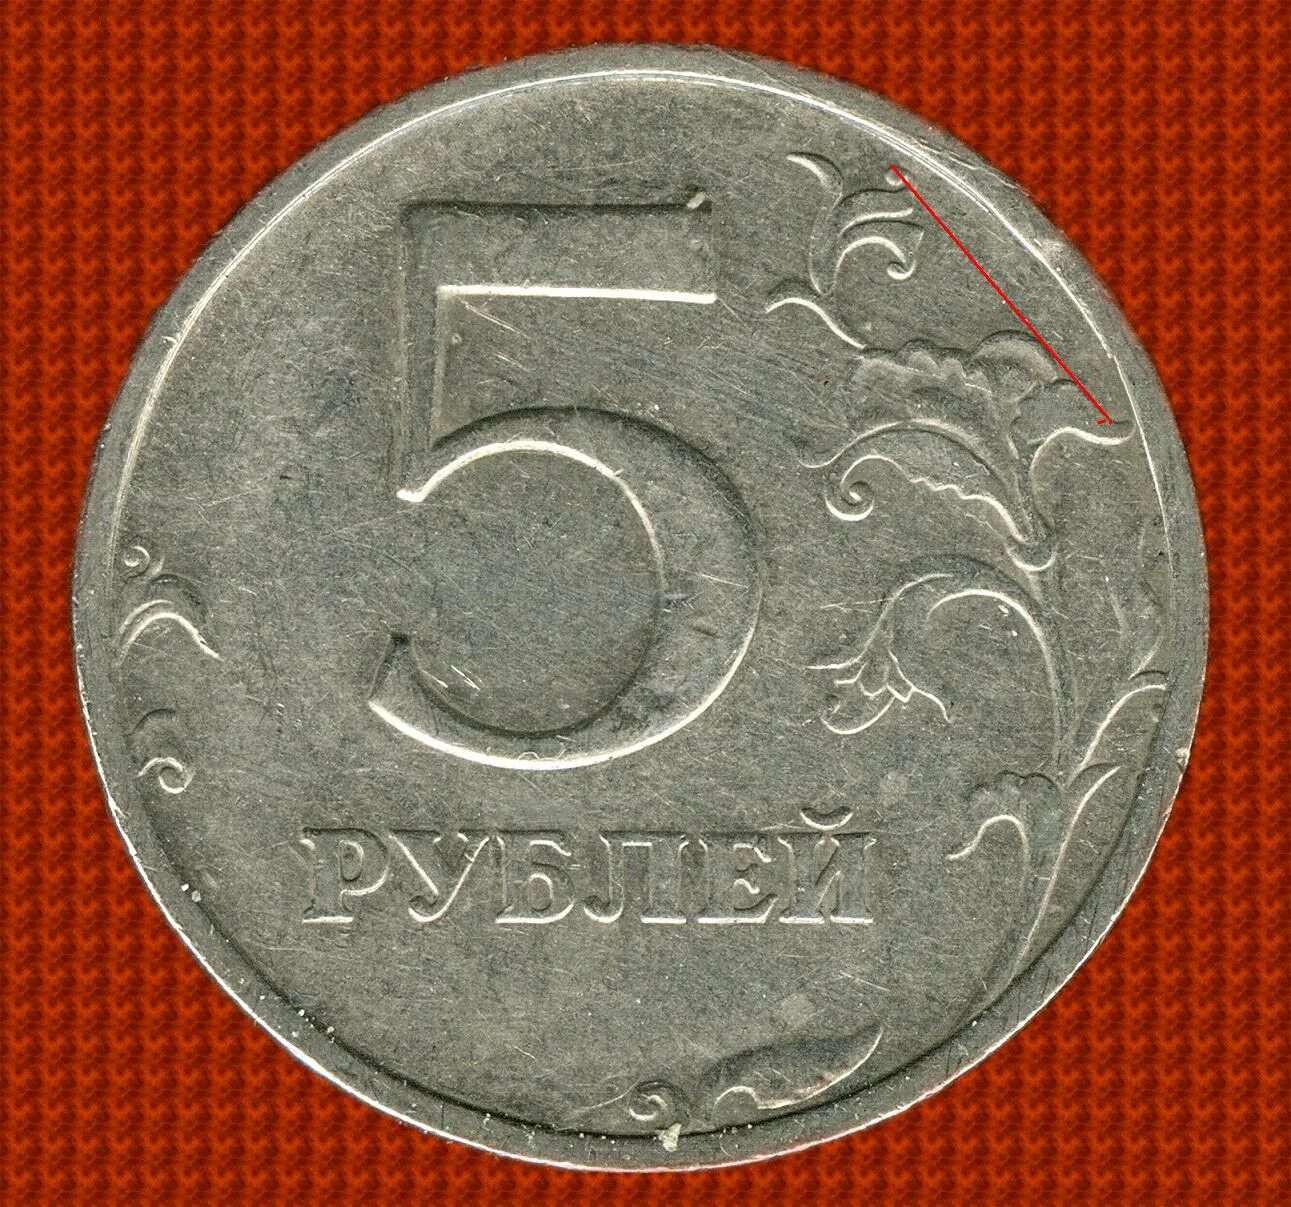 5 рублей 13 года. 5 Рублей 1998 ММД. 5 Рублей 1998 СПМД. 5 Рублей 1998 Московский монетный двор. Пять рублей.